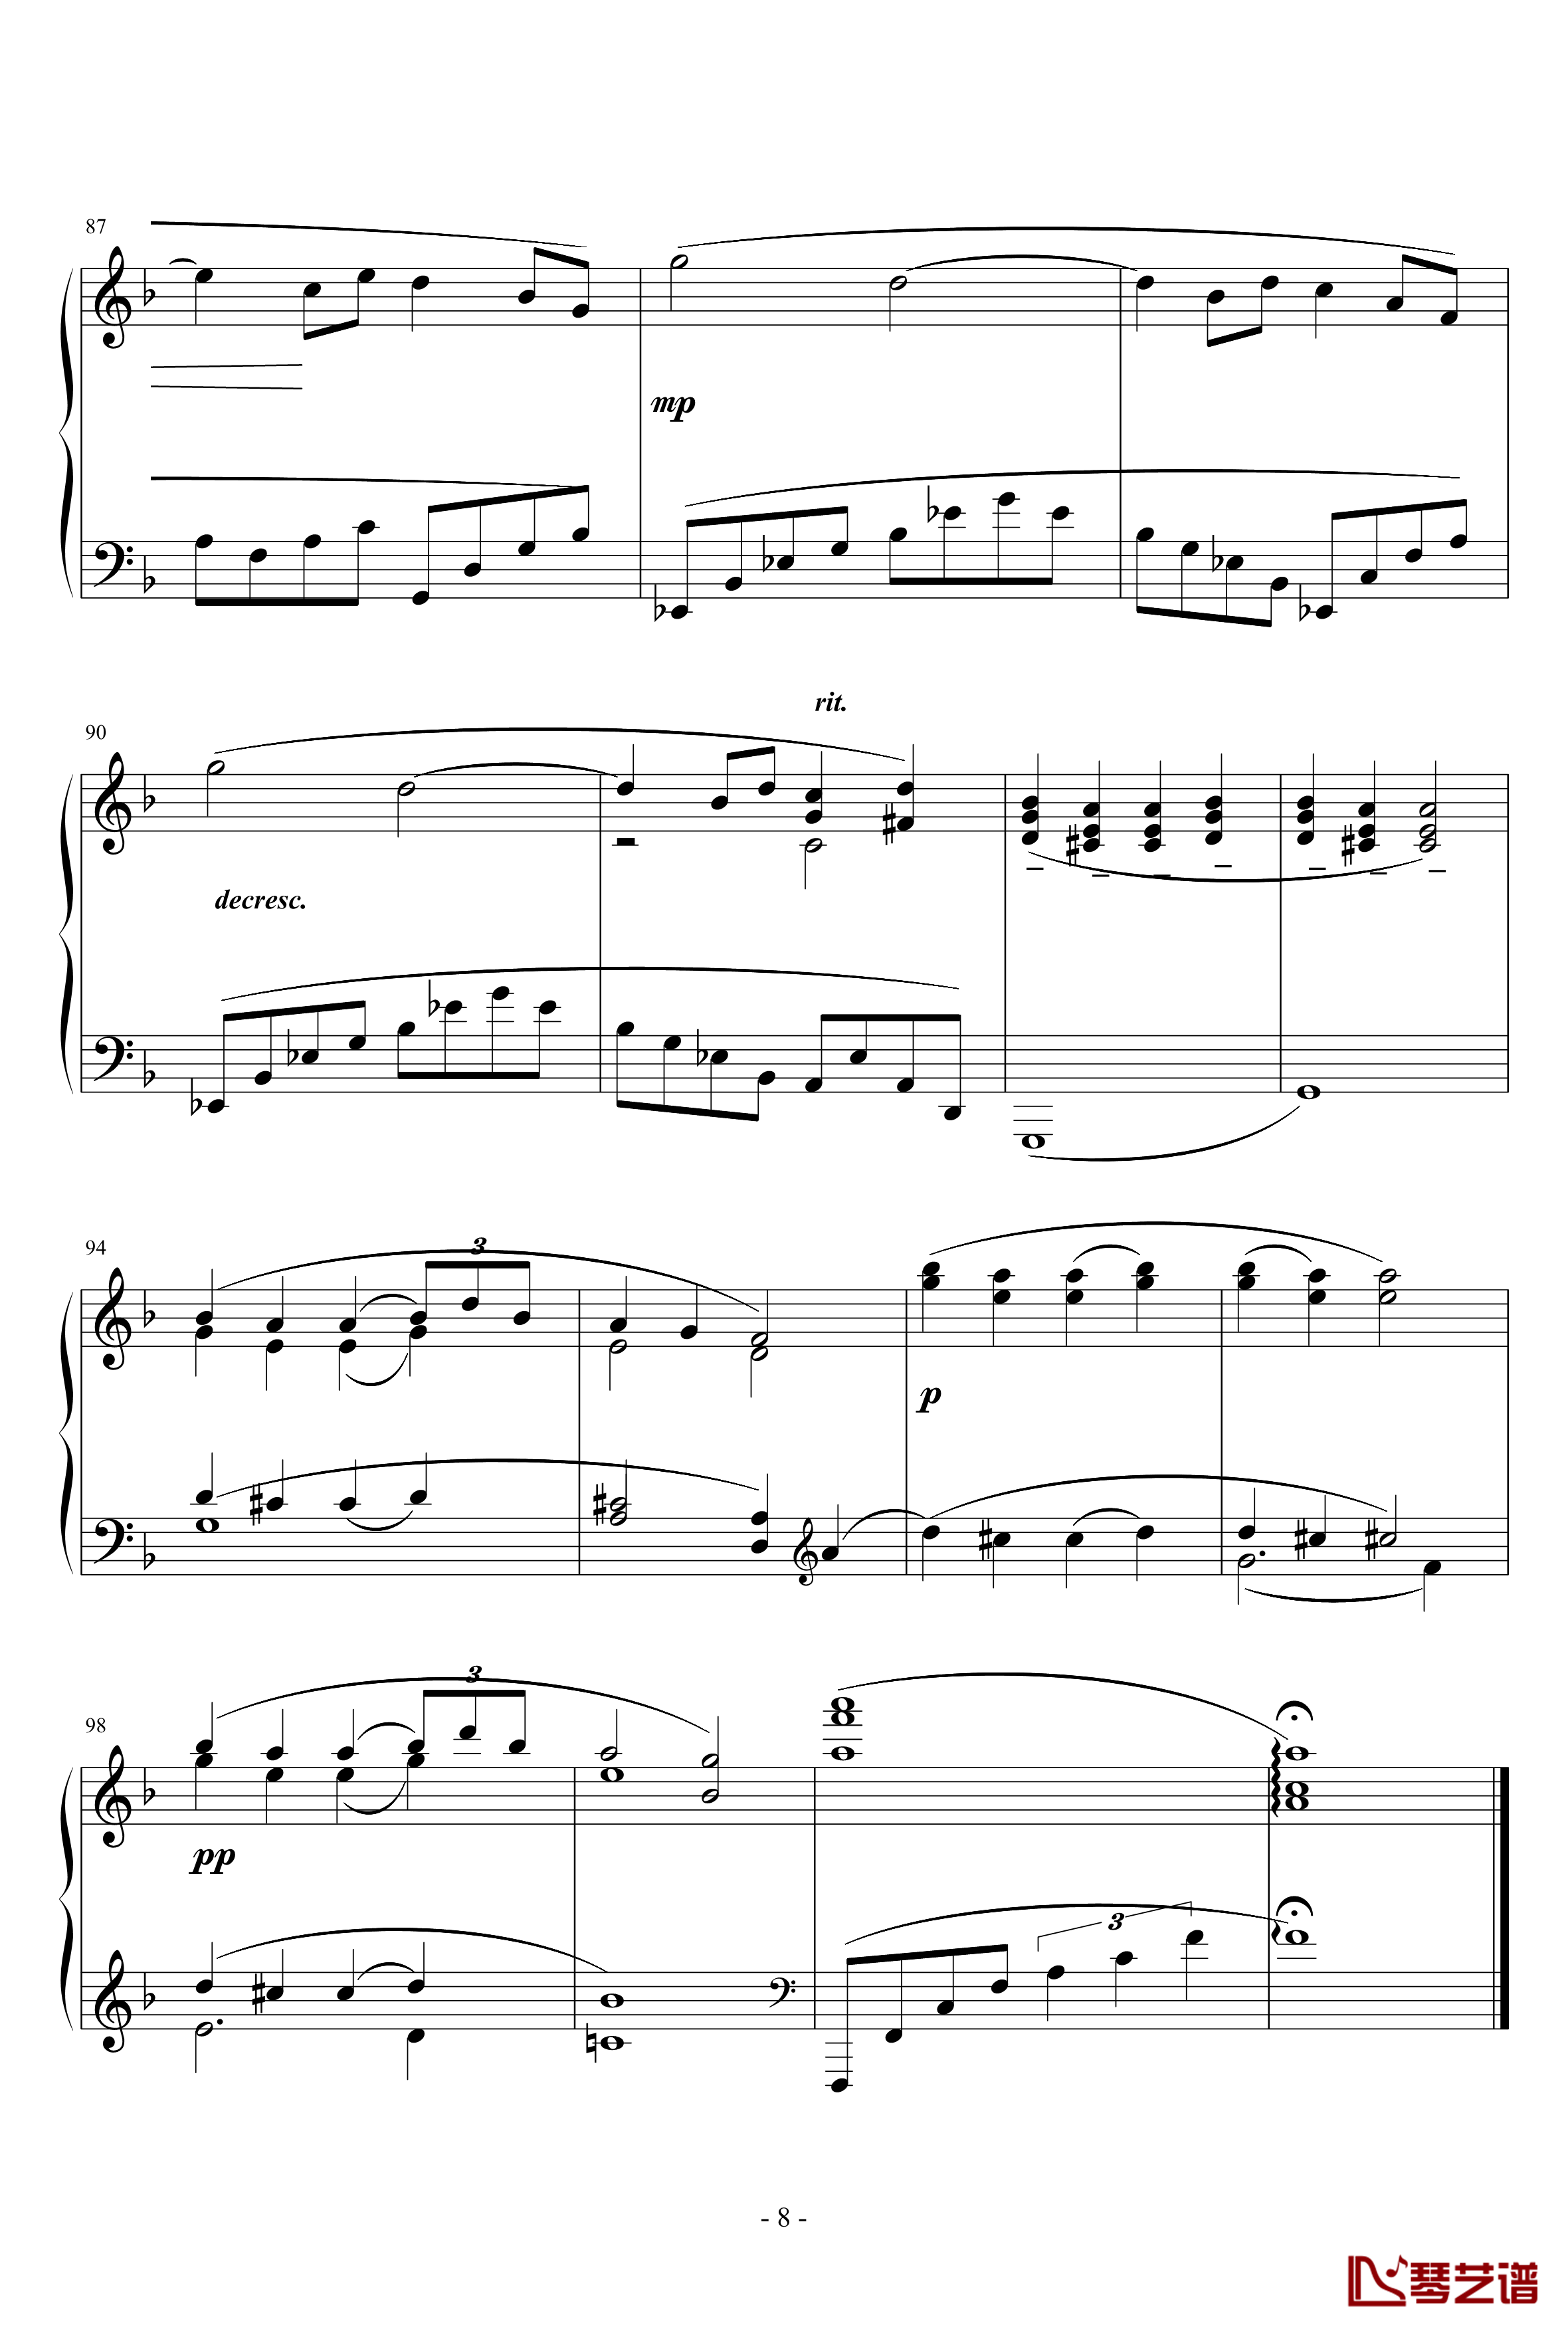 梦幻曲钢琴谱-德彪西8